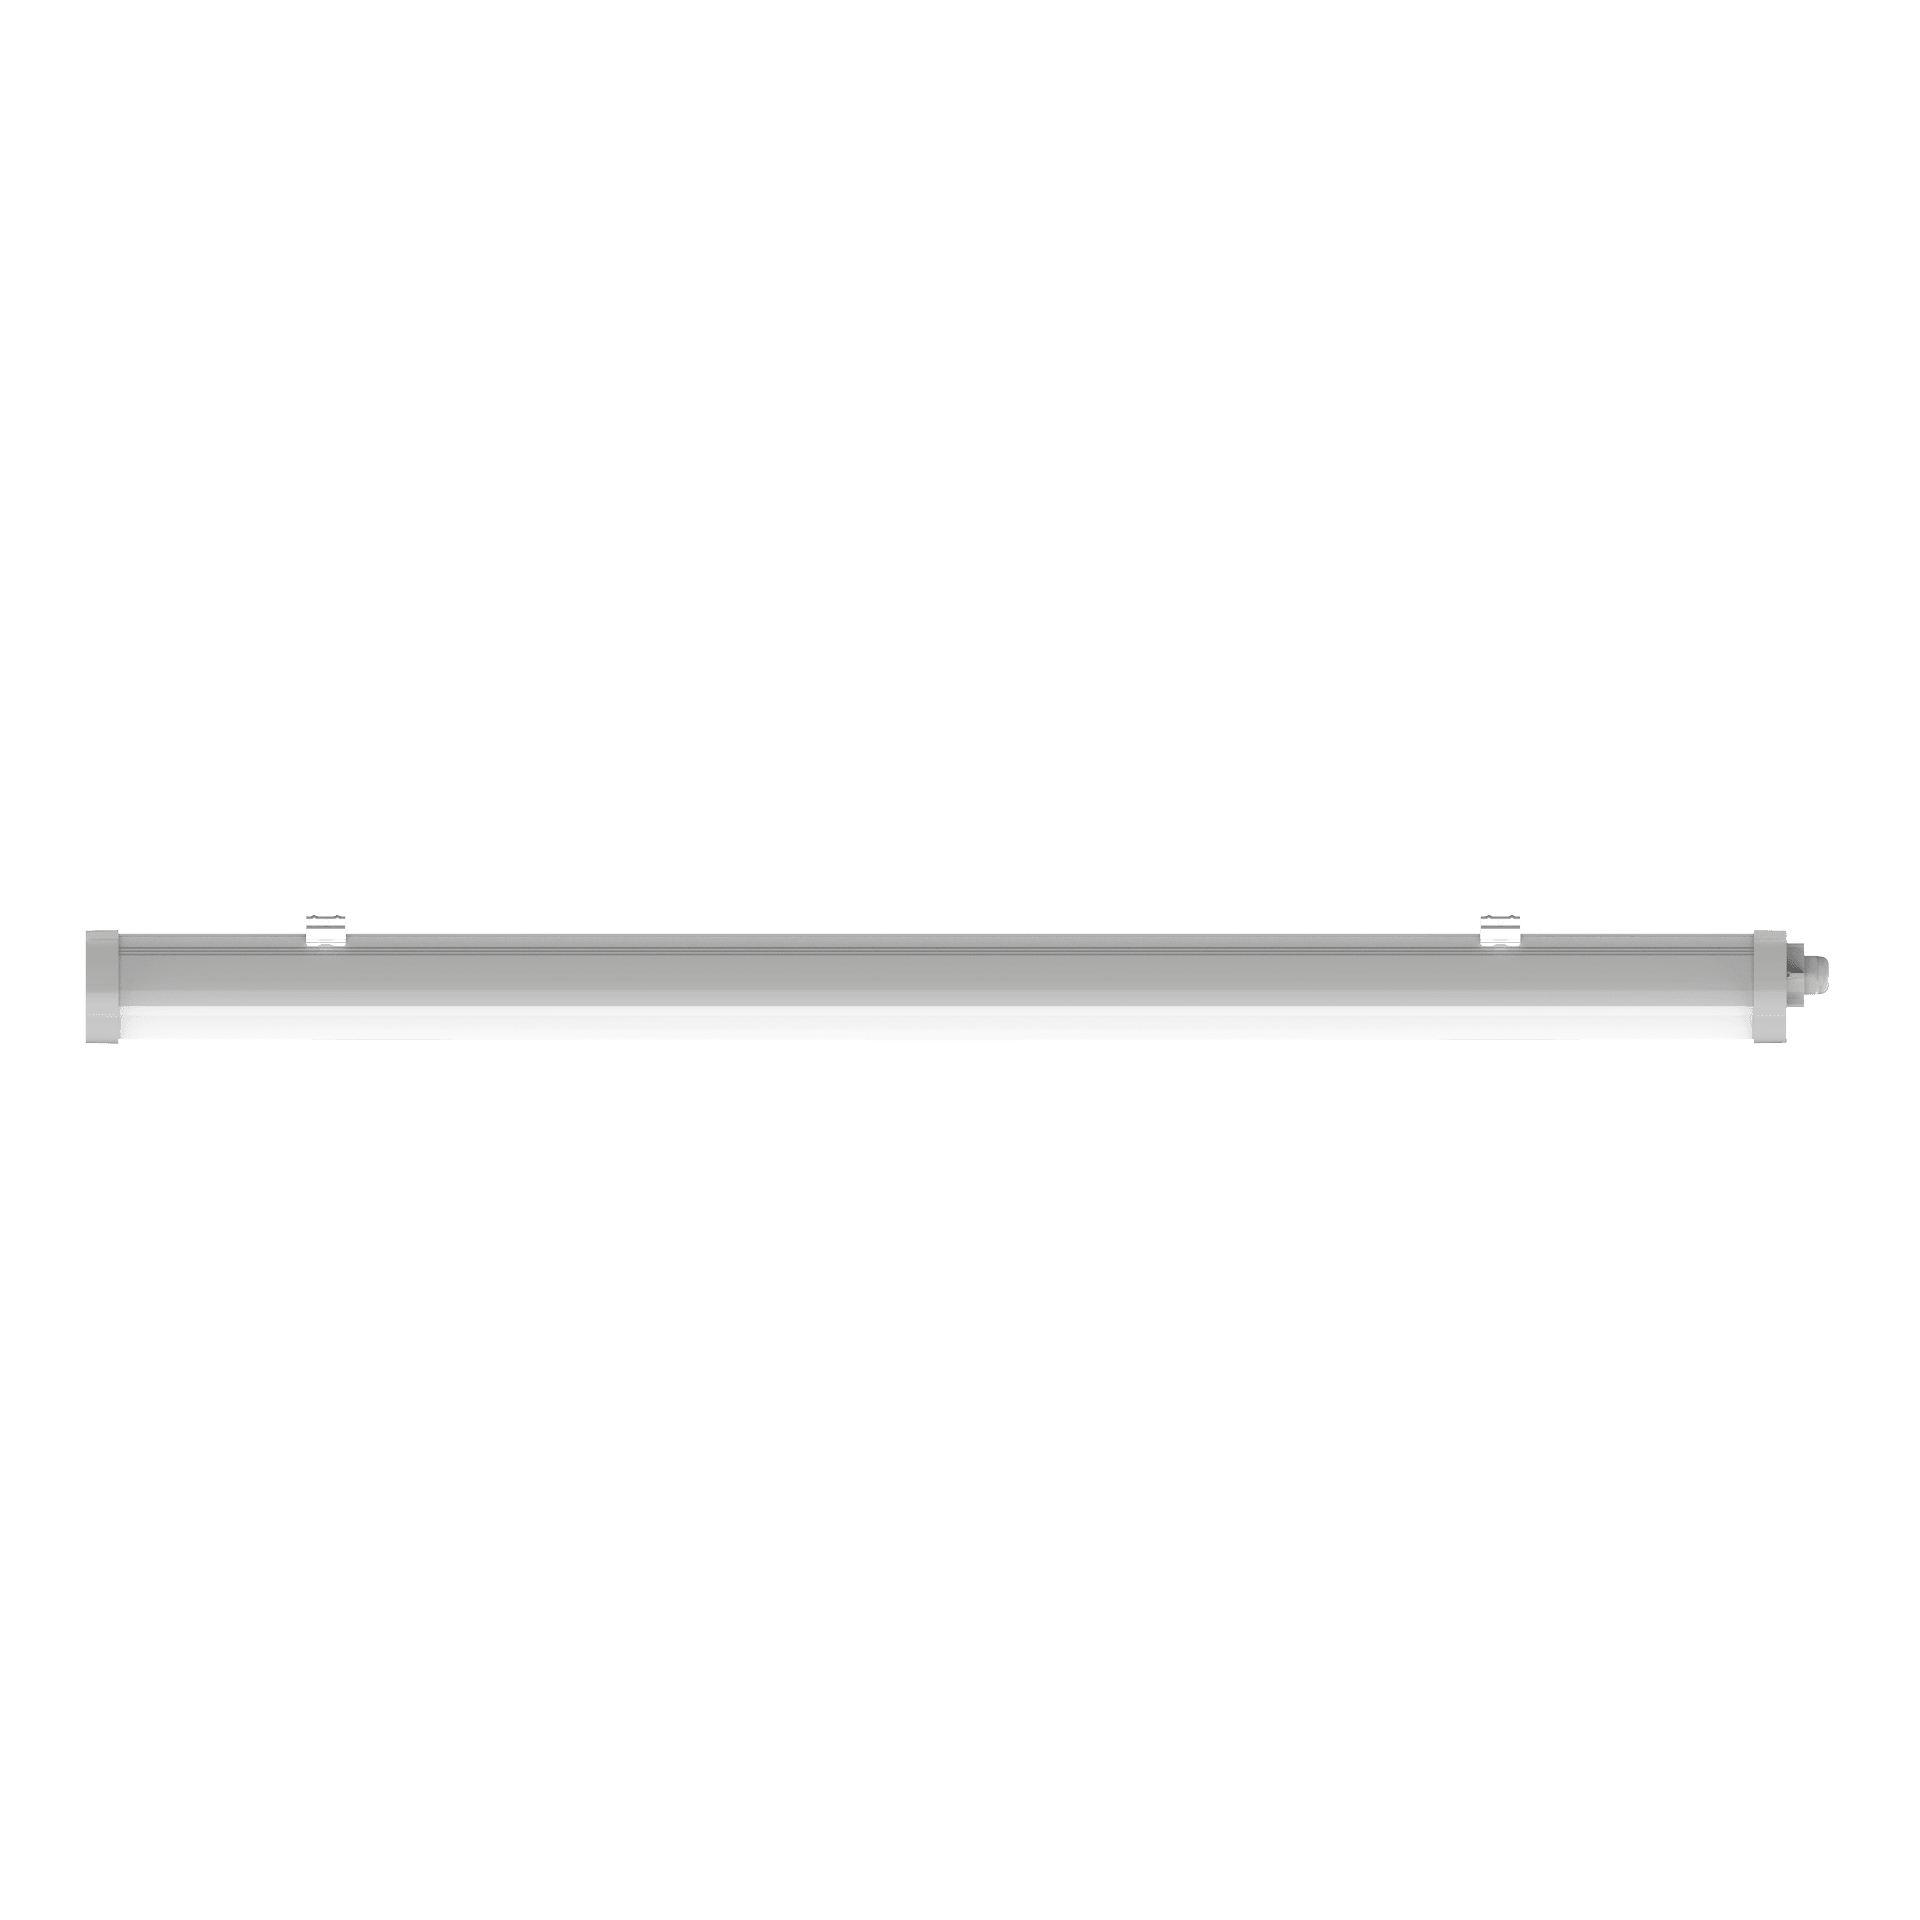 Engel Exton Standard LED-Leuchte - Engel Lighting GmbH & Co. KG